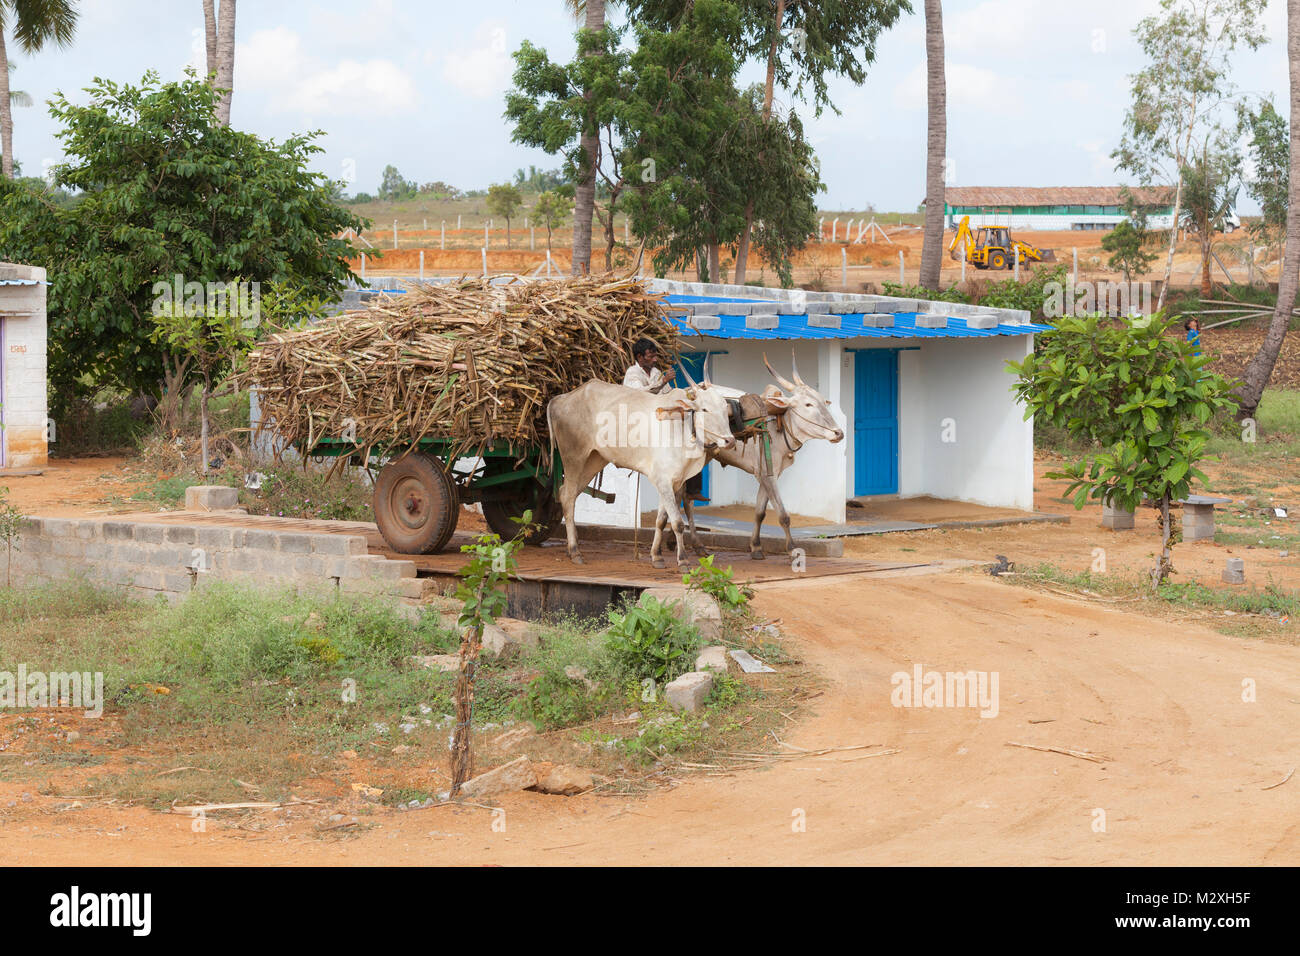 L'Inde , Karnataka, Hampi, charrette avec la canne à sucre sur un pont-bascule Banque D'Images